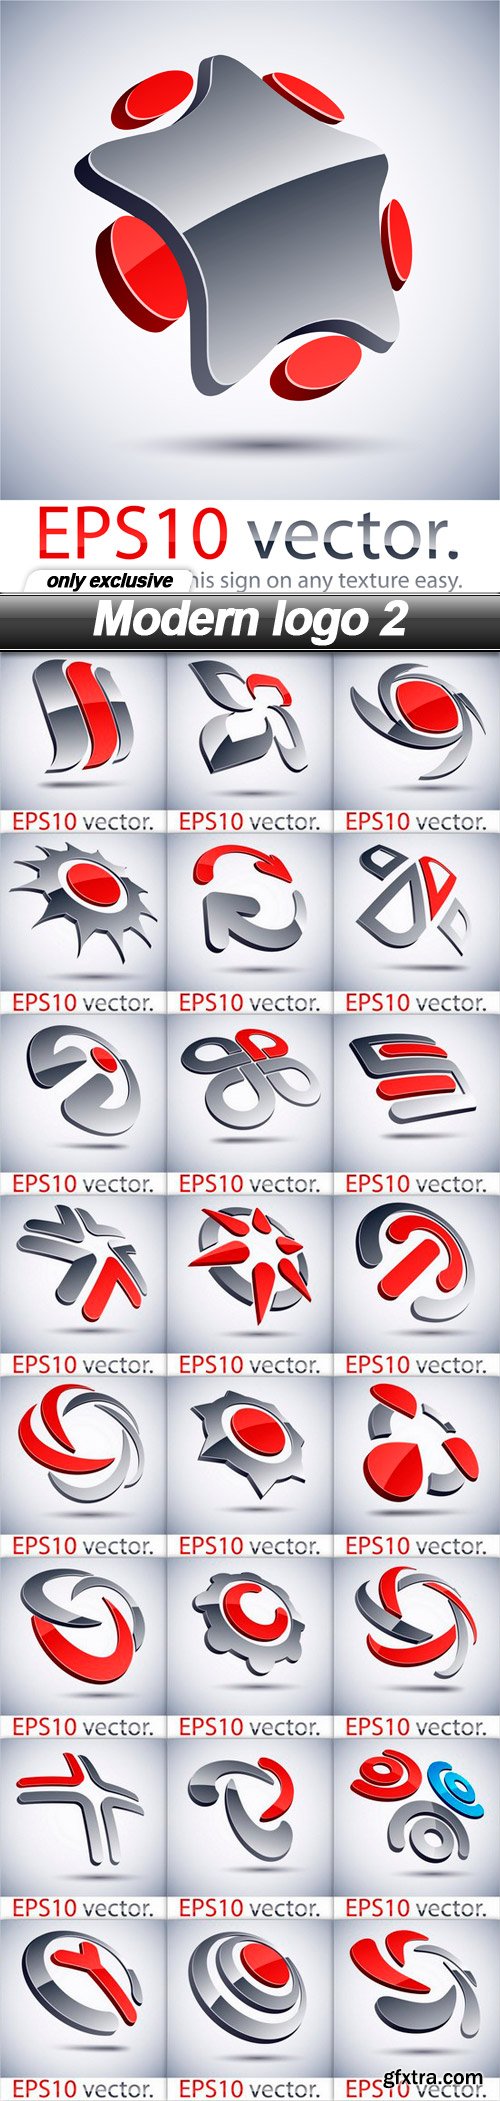 Modern logo 2 - 25 EPS